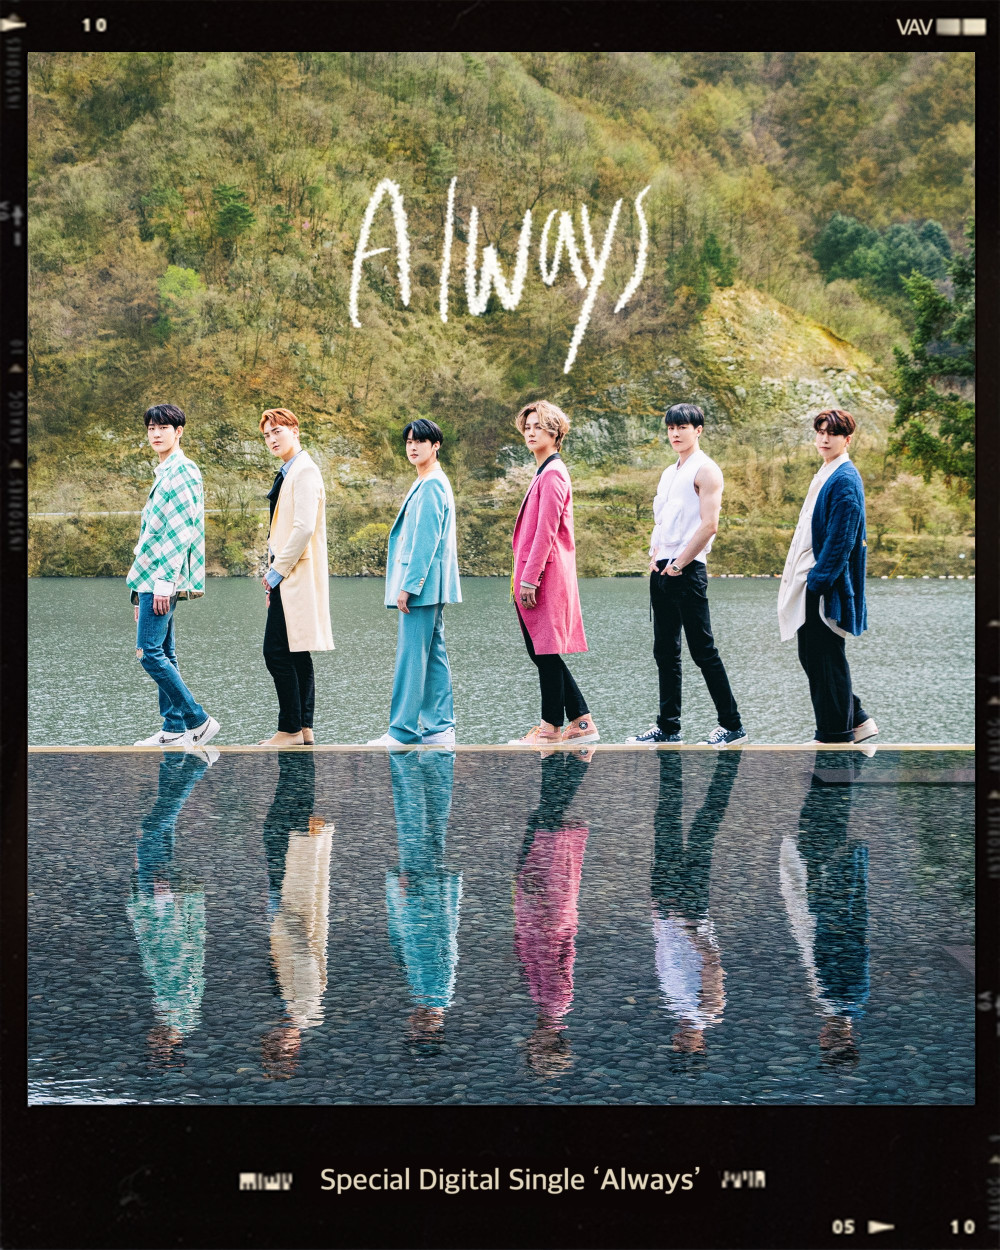 [Камбэк] VAV альбом "Always": музыкальное видео "Always"